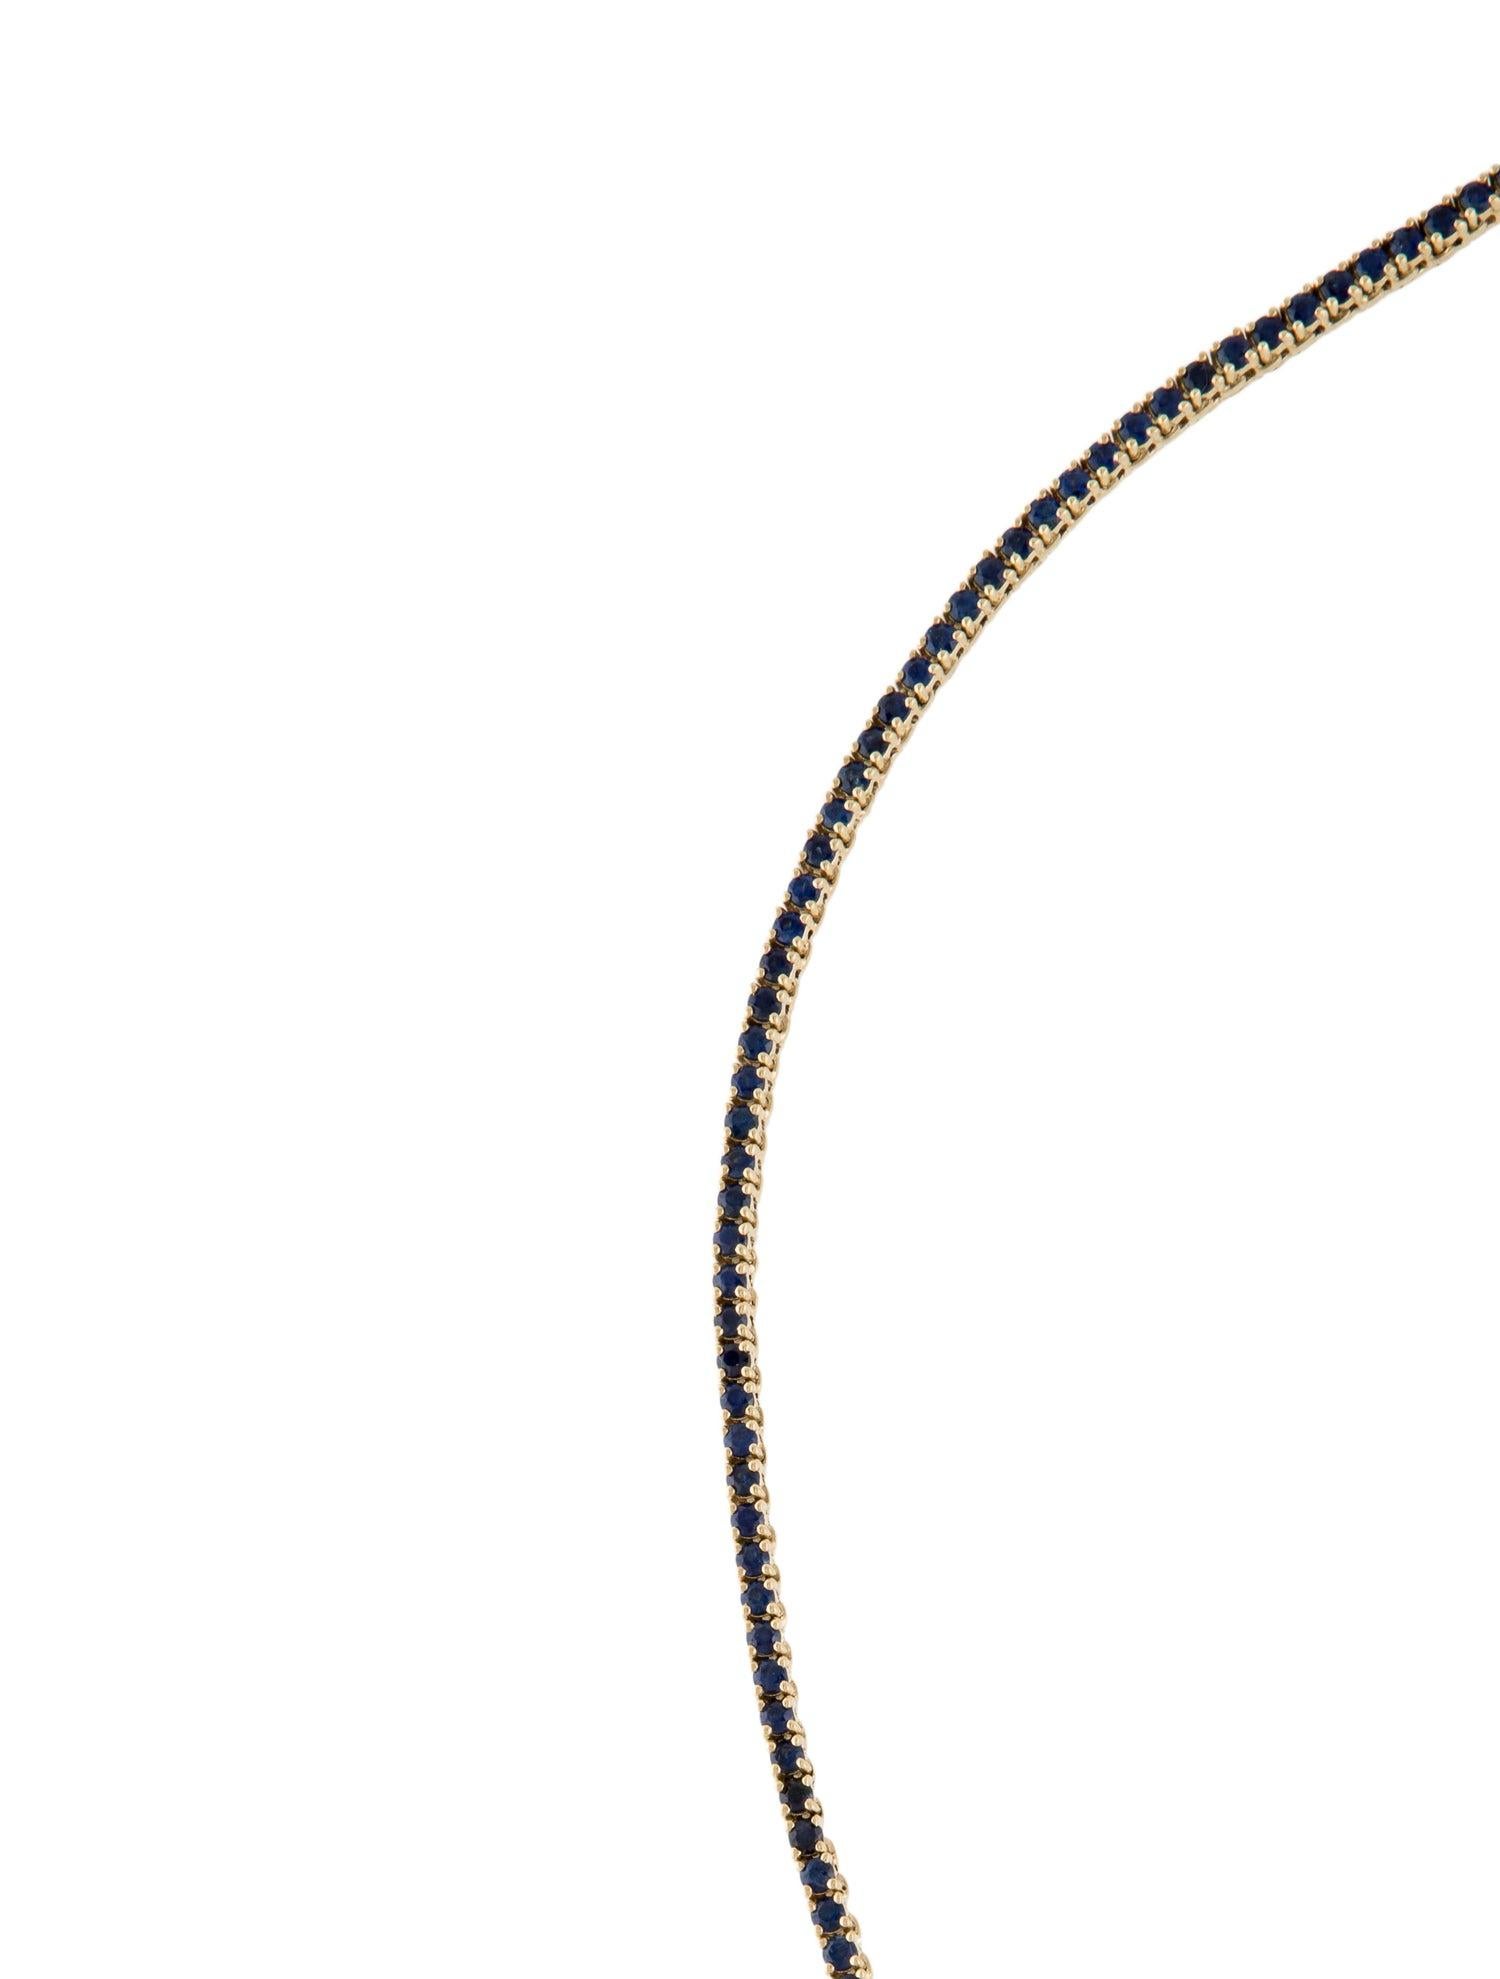 Women's 14K 6.47ctw Sapphire Collar Necklace - Exquisite Gemstone Statement Piece For Sale